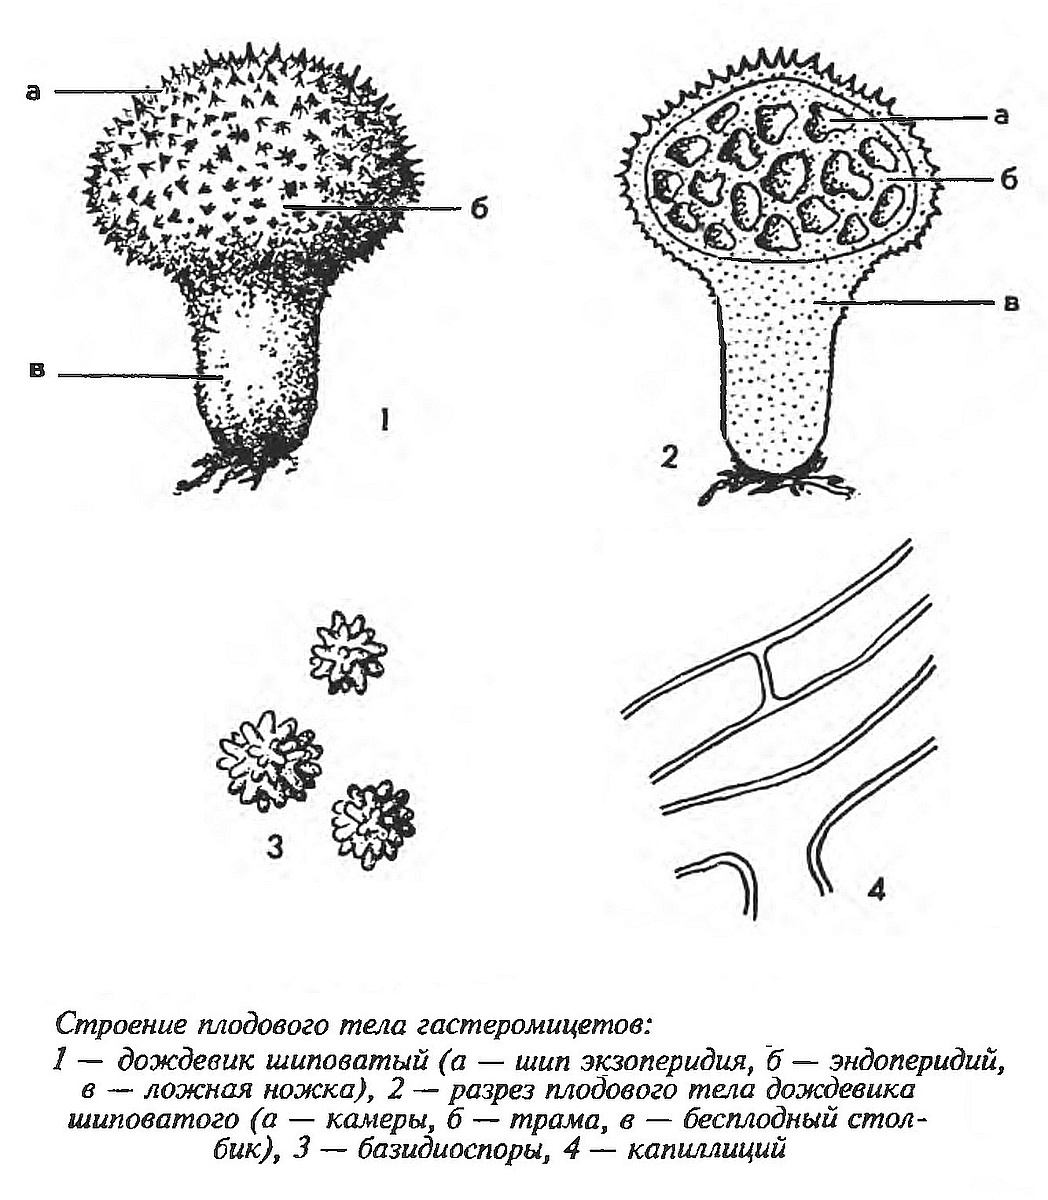 Дождевик шиповатый (Lycoperdon perlatum) 2